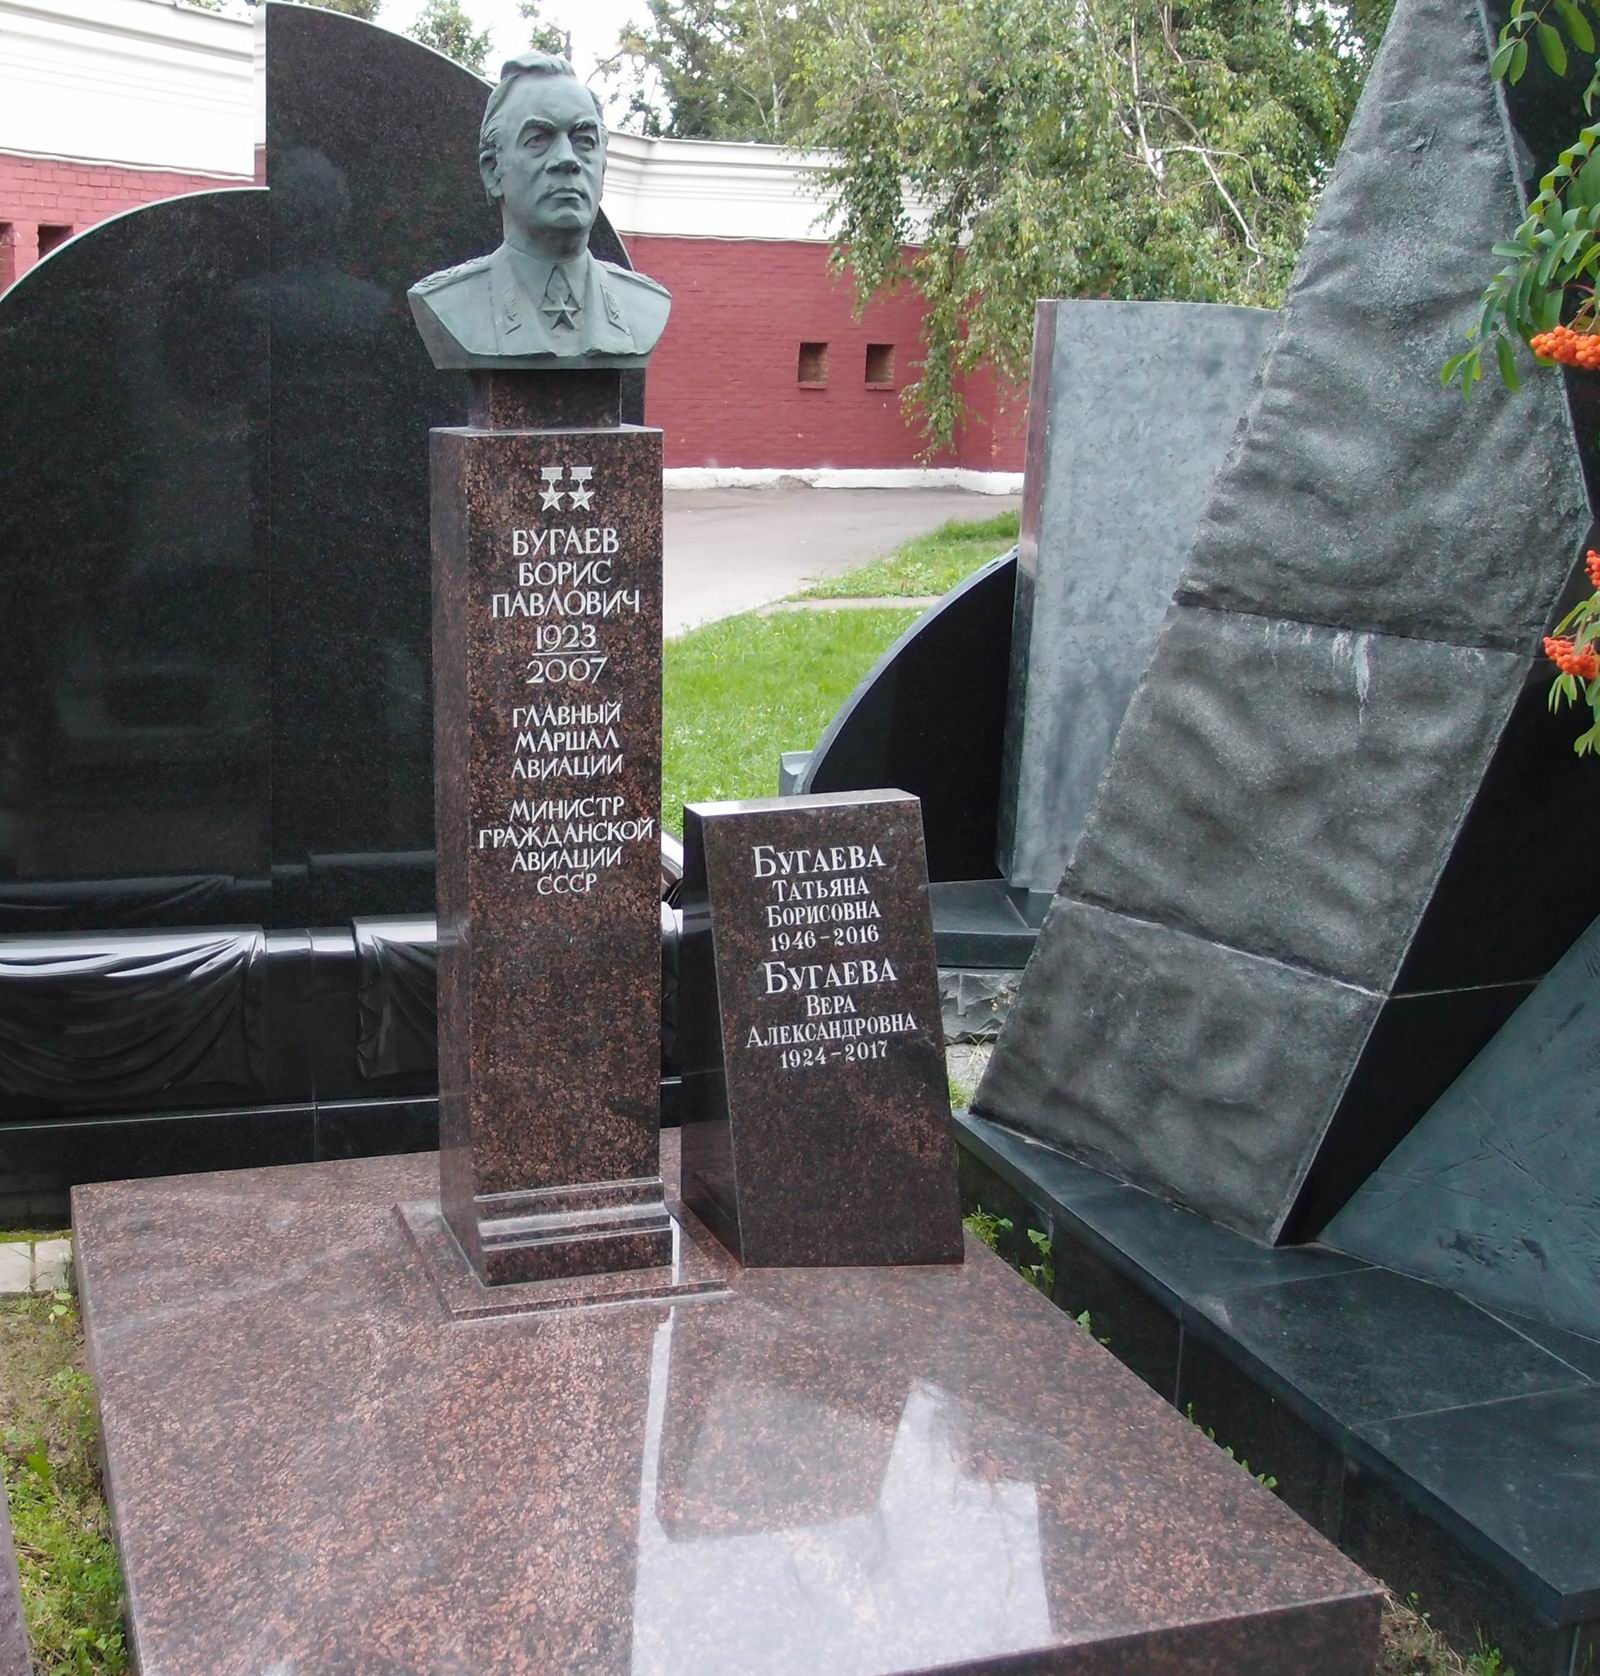 Памятник на могиле Бугаева Б.П. (1923-2007), ск. В.Цигаль, арх. В.Бухаев, на Новодевичьем кладбище (11-5-9). Нажмите левую кнопку мыши чтобы увидеть фрагмент памятника.